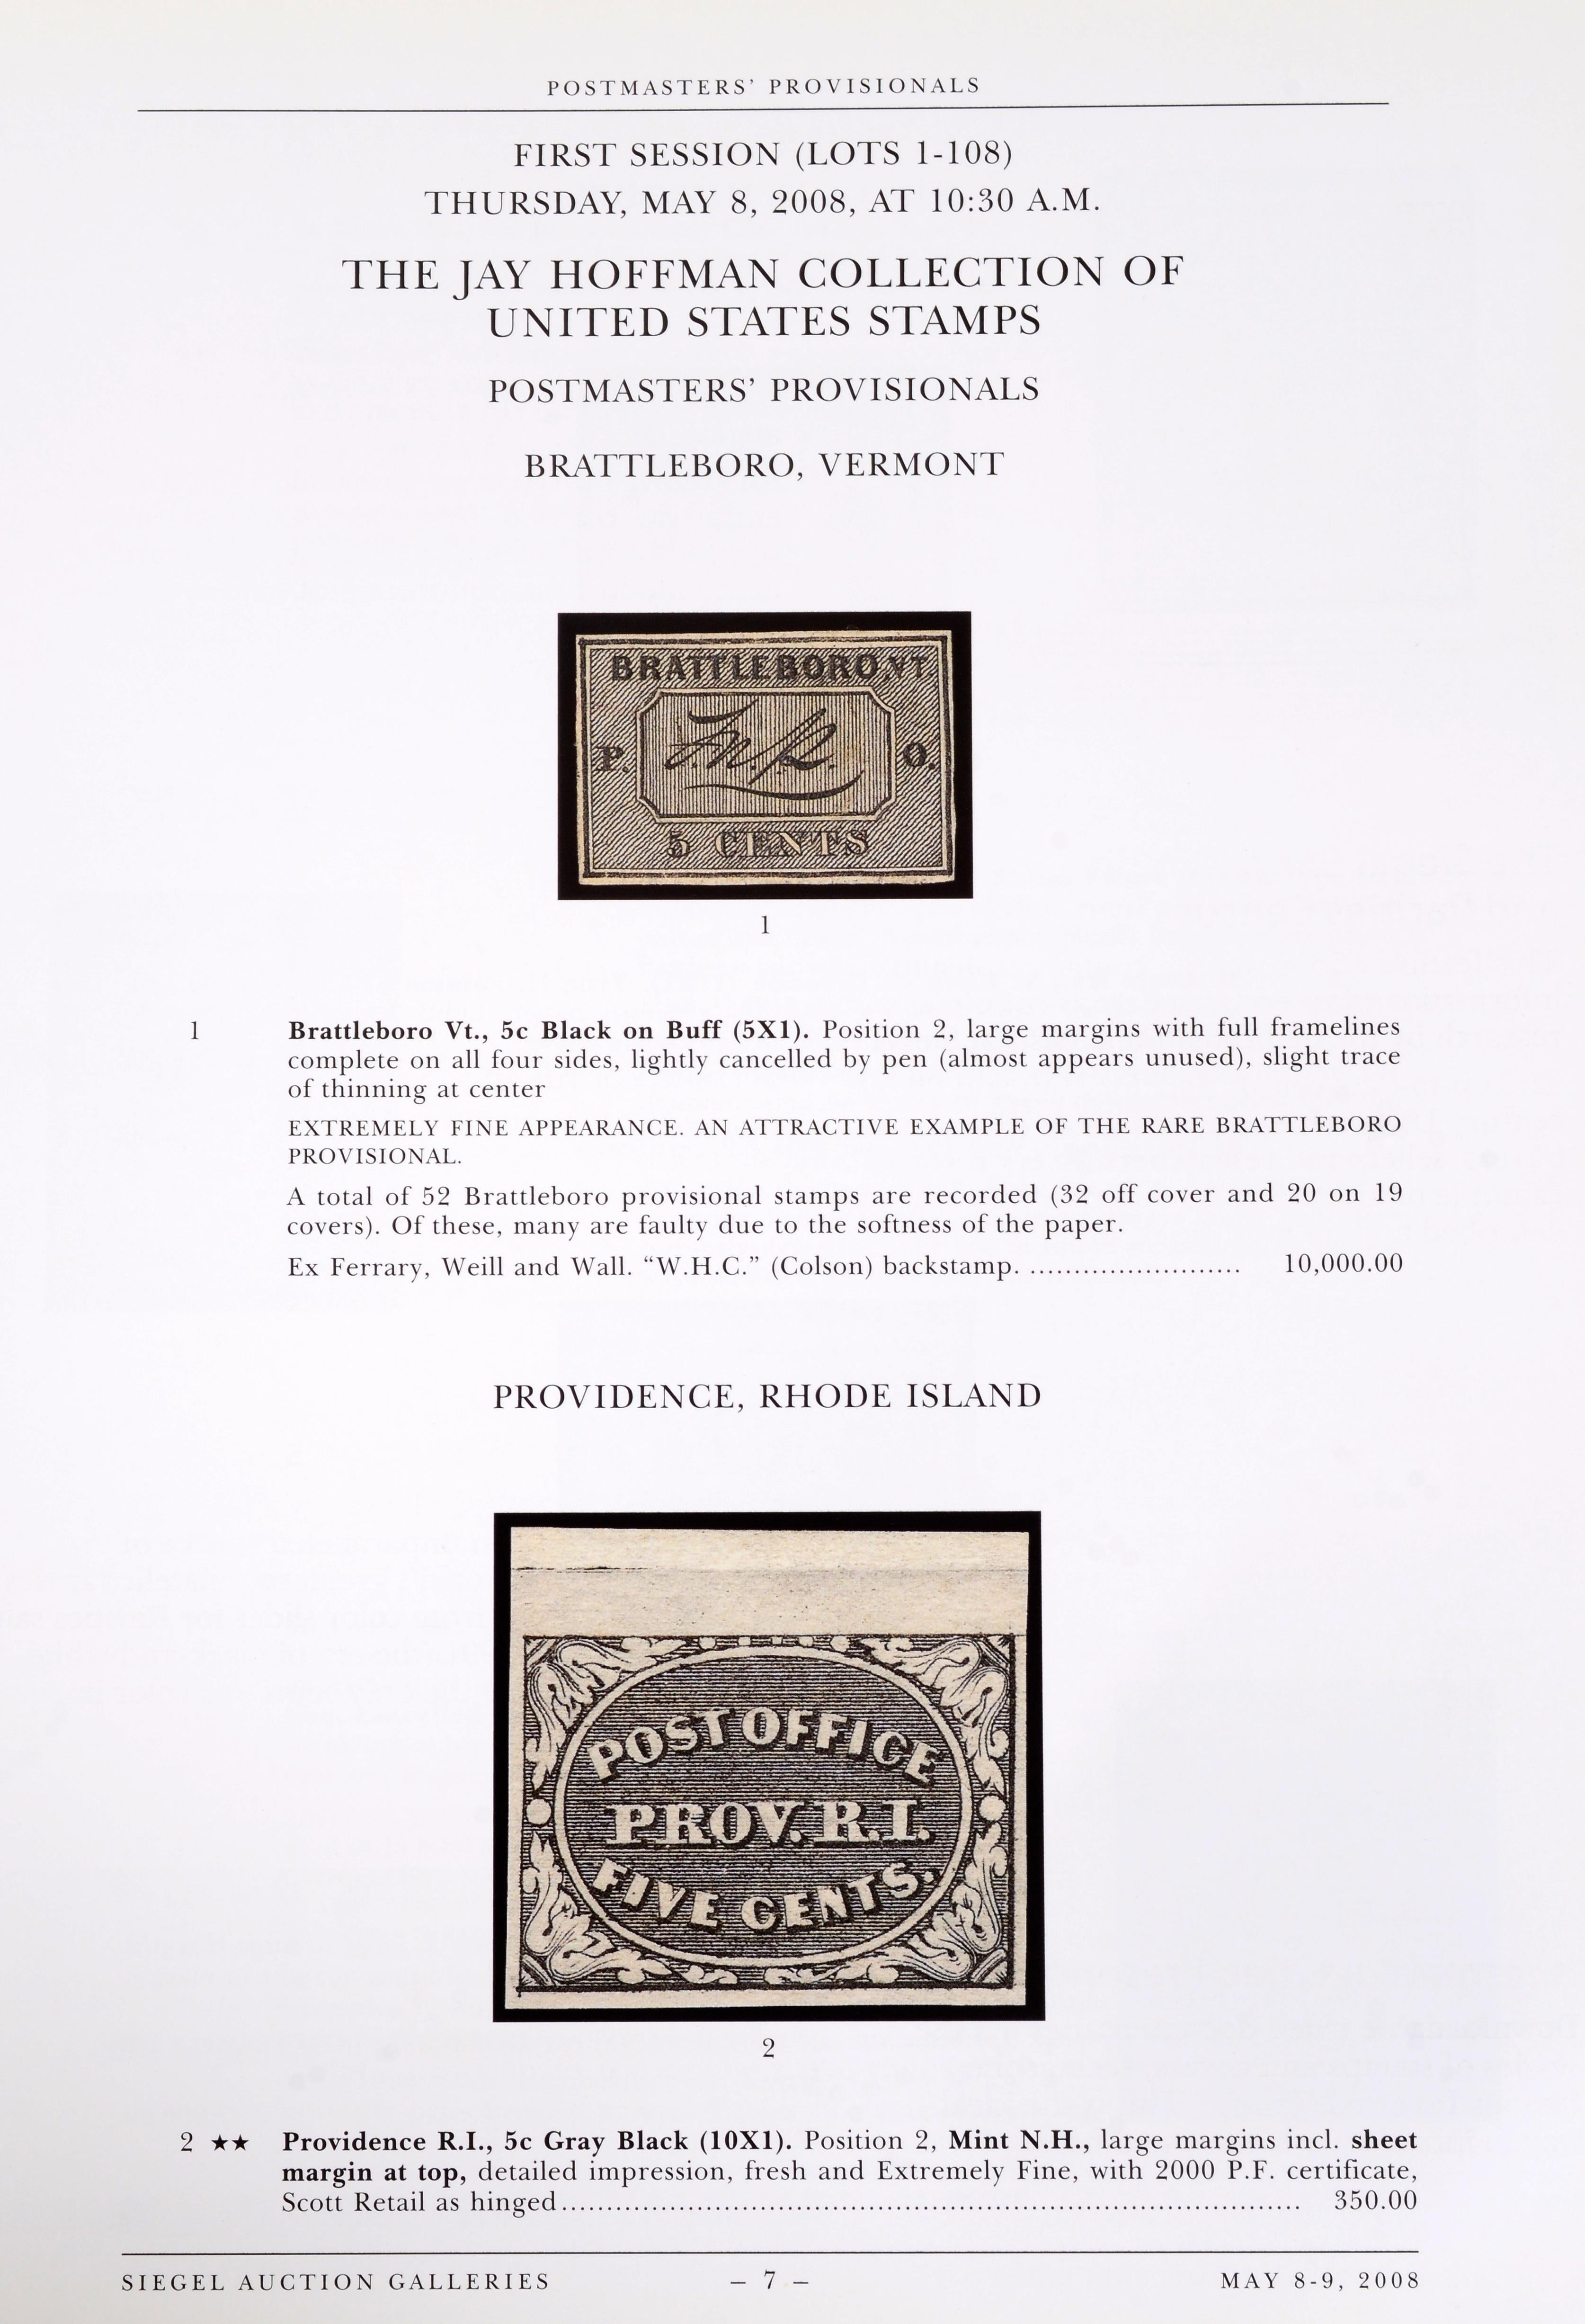 La Collectional de timbres des États-Unis de Jay Hoffman : Vente 956, jeudi et vendredi 8 et 9 mai 2008, par Robert A. Siegel Auction Galleries, Inc. L'une des plus importantes collections mises sur le marché. Hubert N. (Jay) Hoffman III, PDG de la